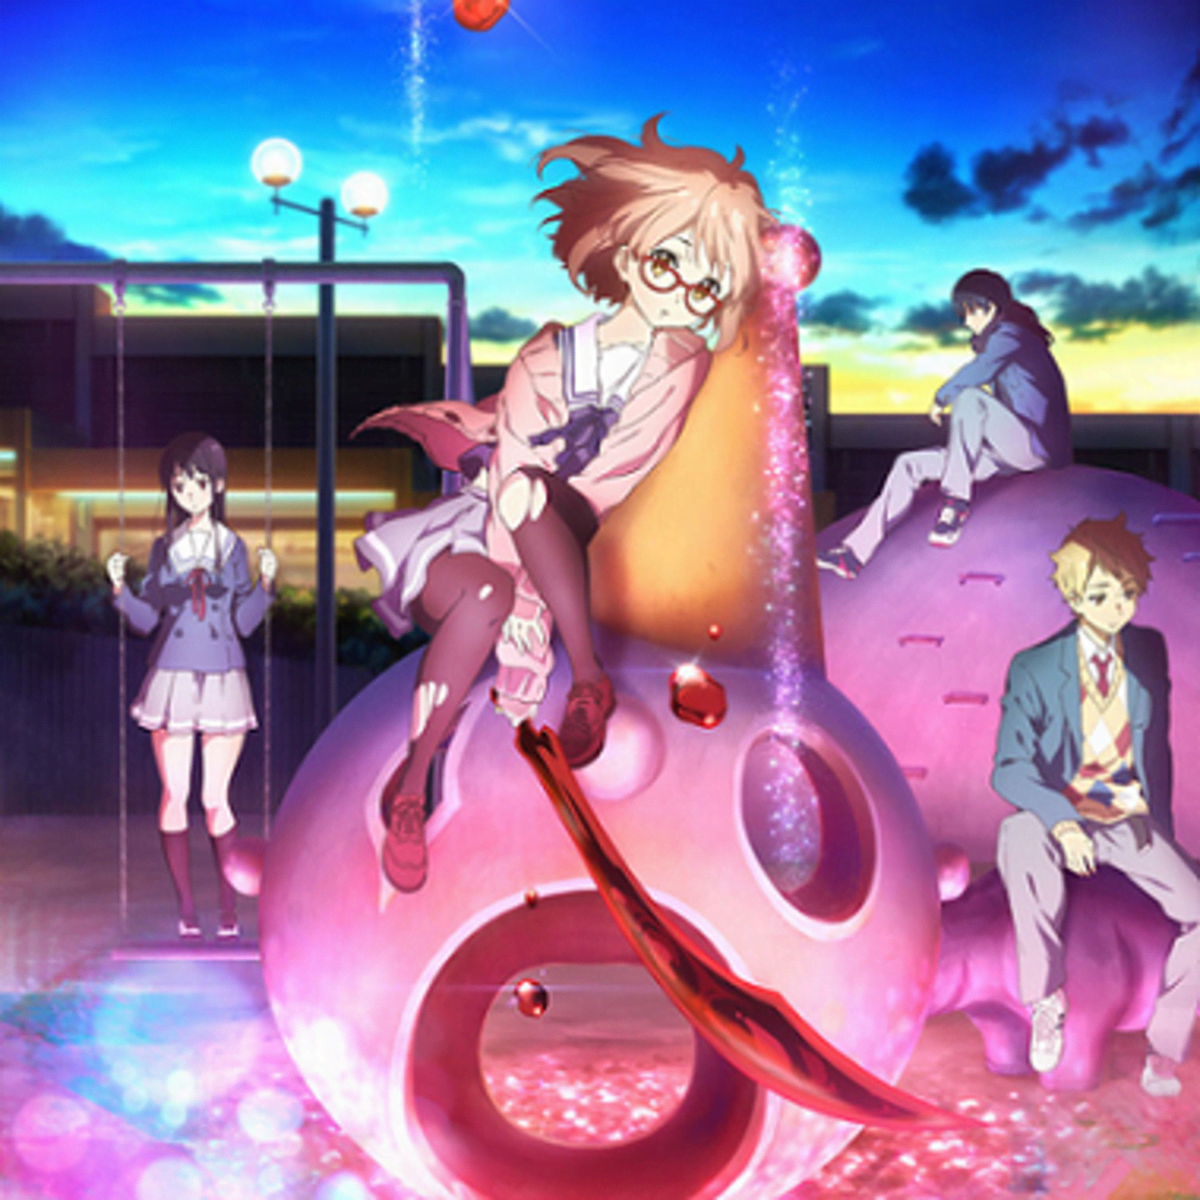 Ending/Overall Review: Kyoukai no Kanata